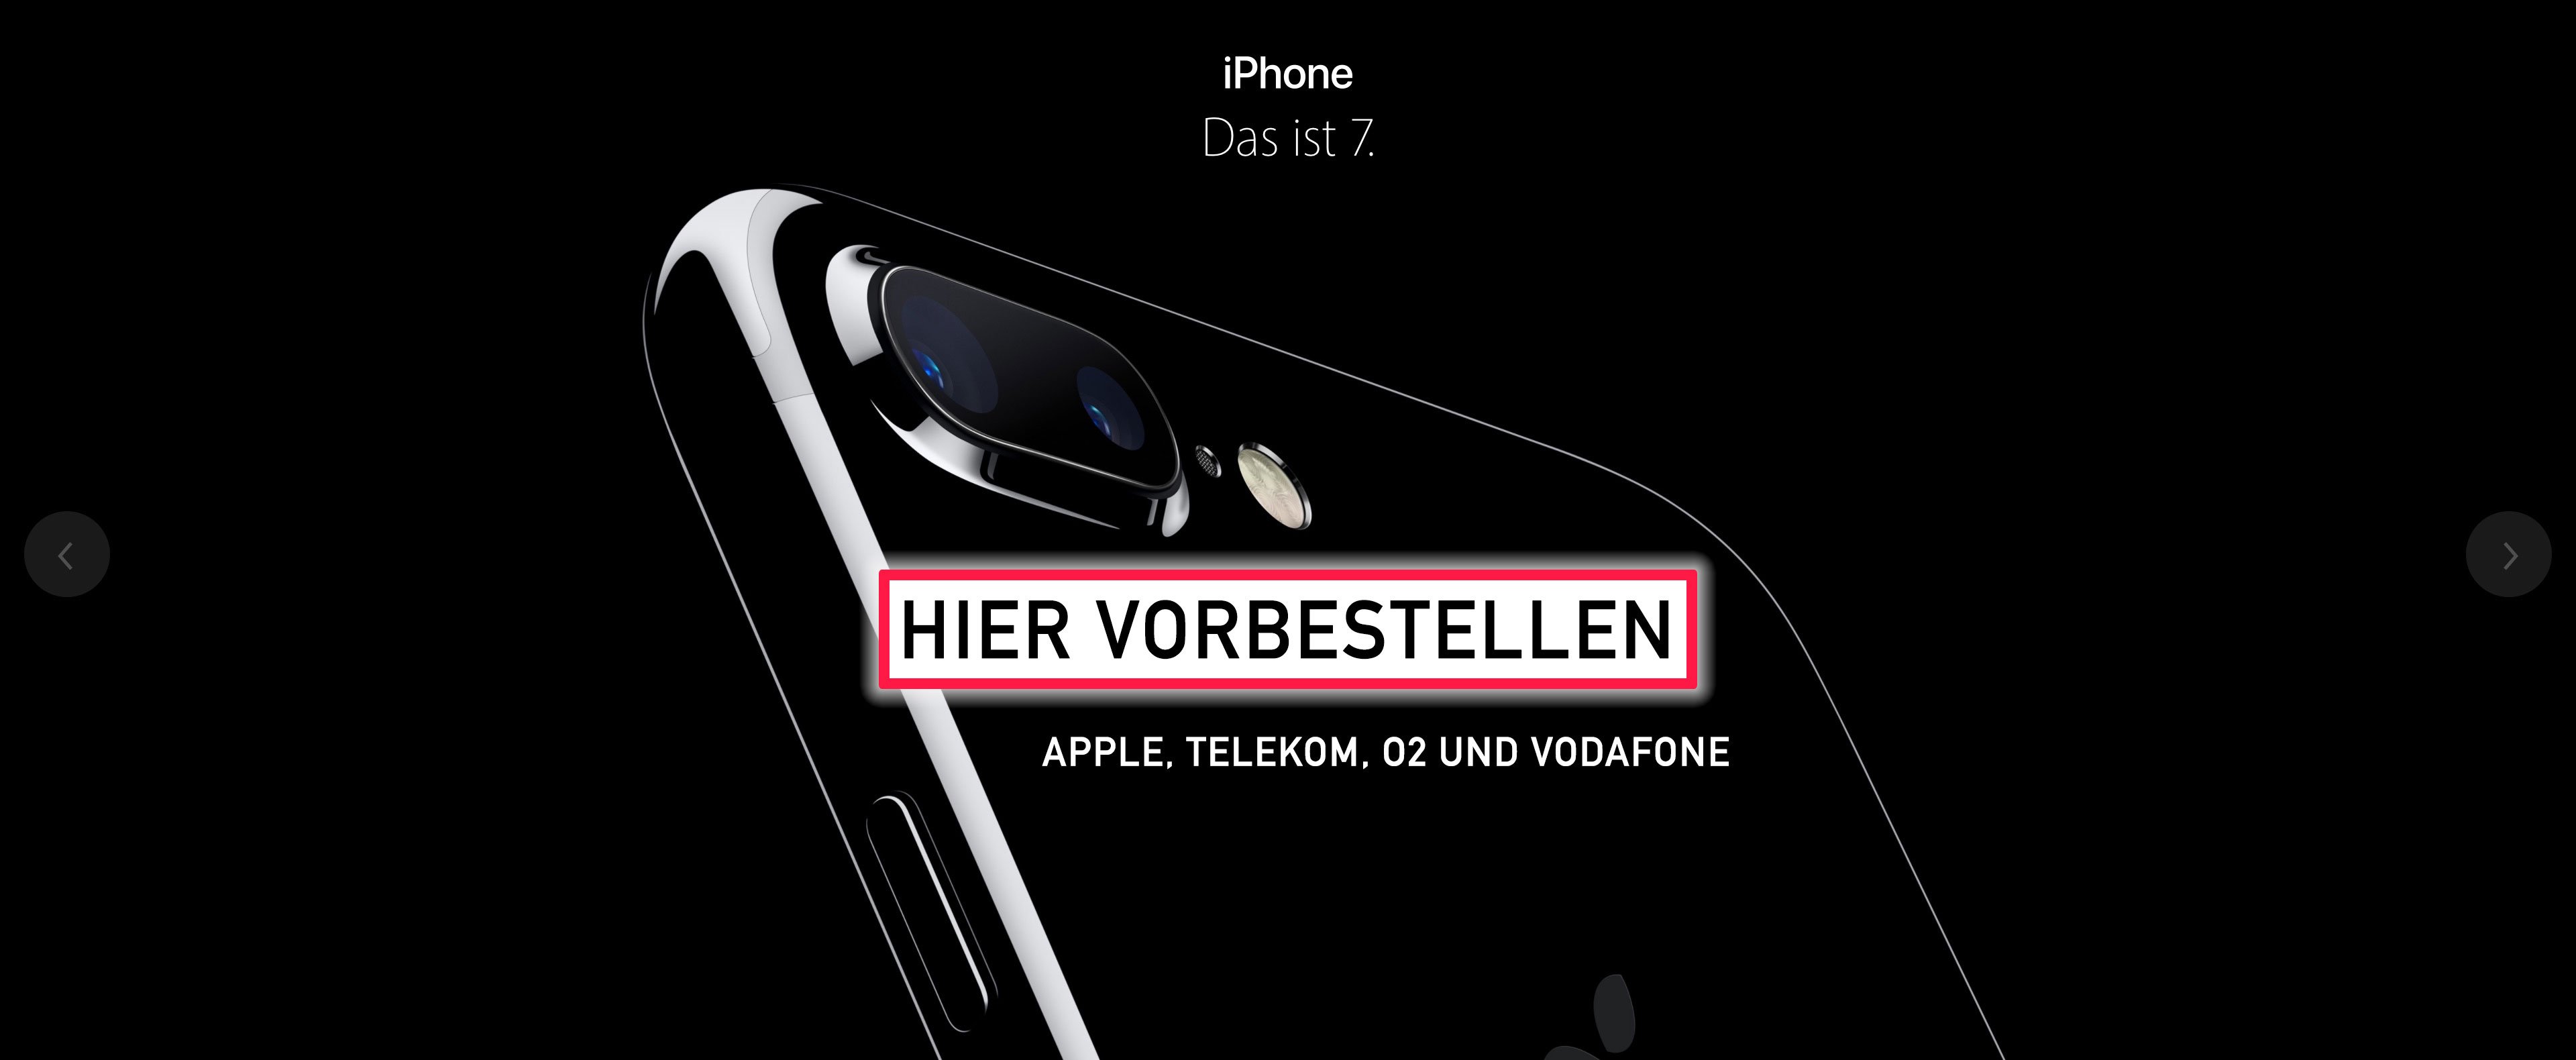 Apple iPhone 7: Reservierung und Abholung am 17. September möglich 1